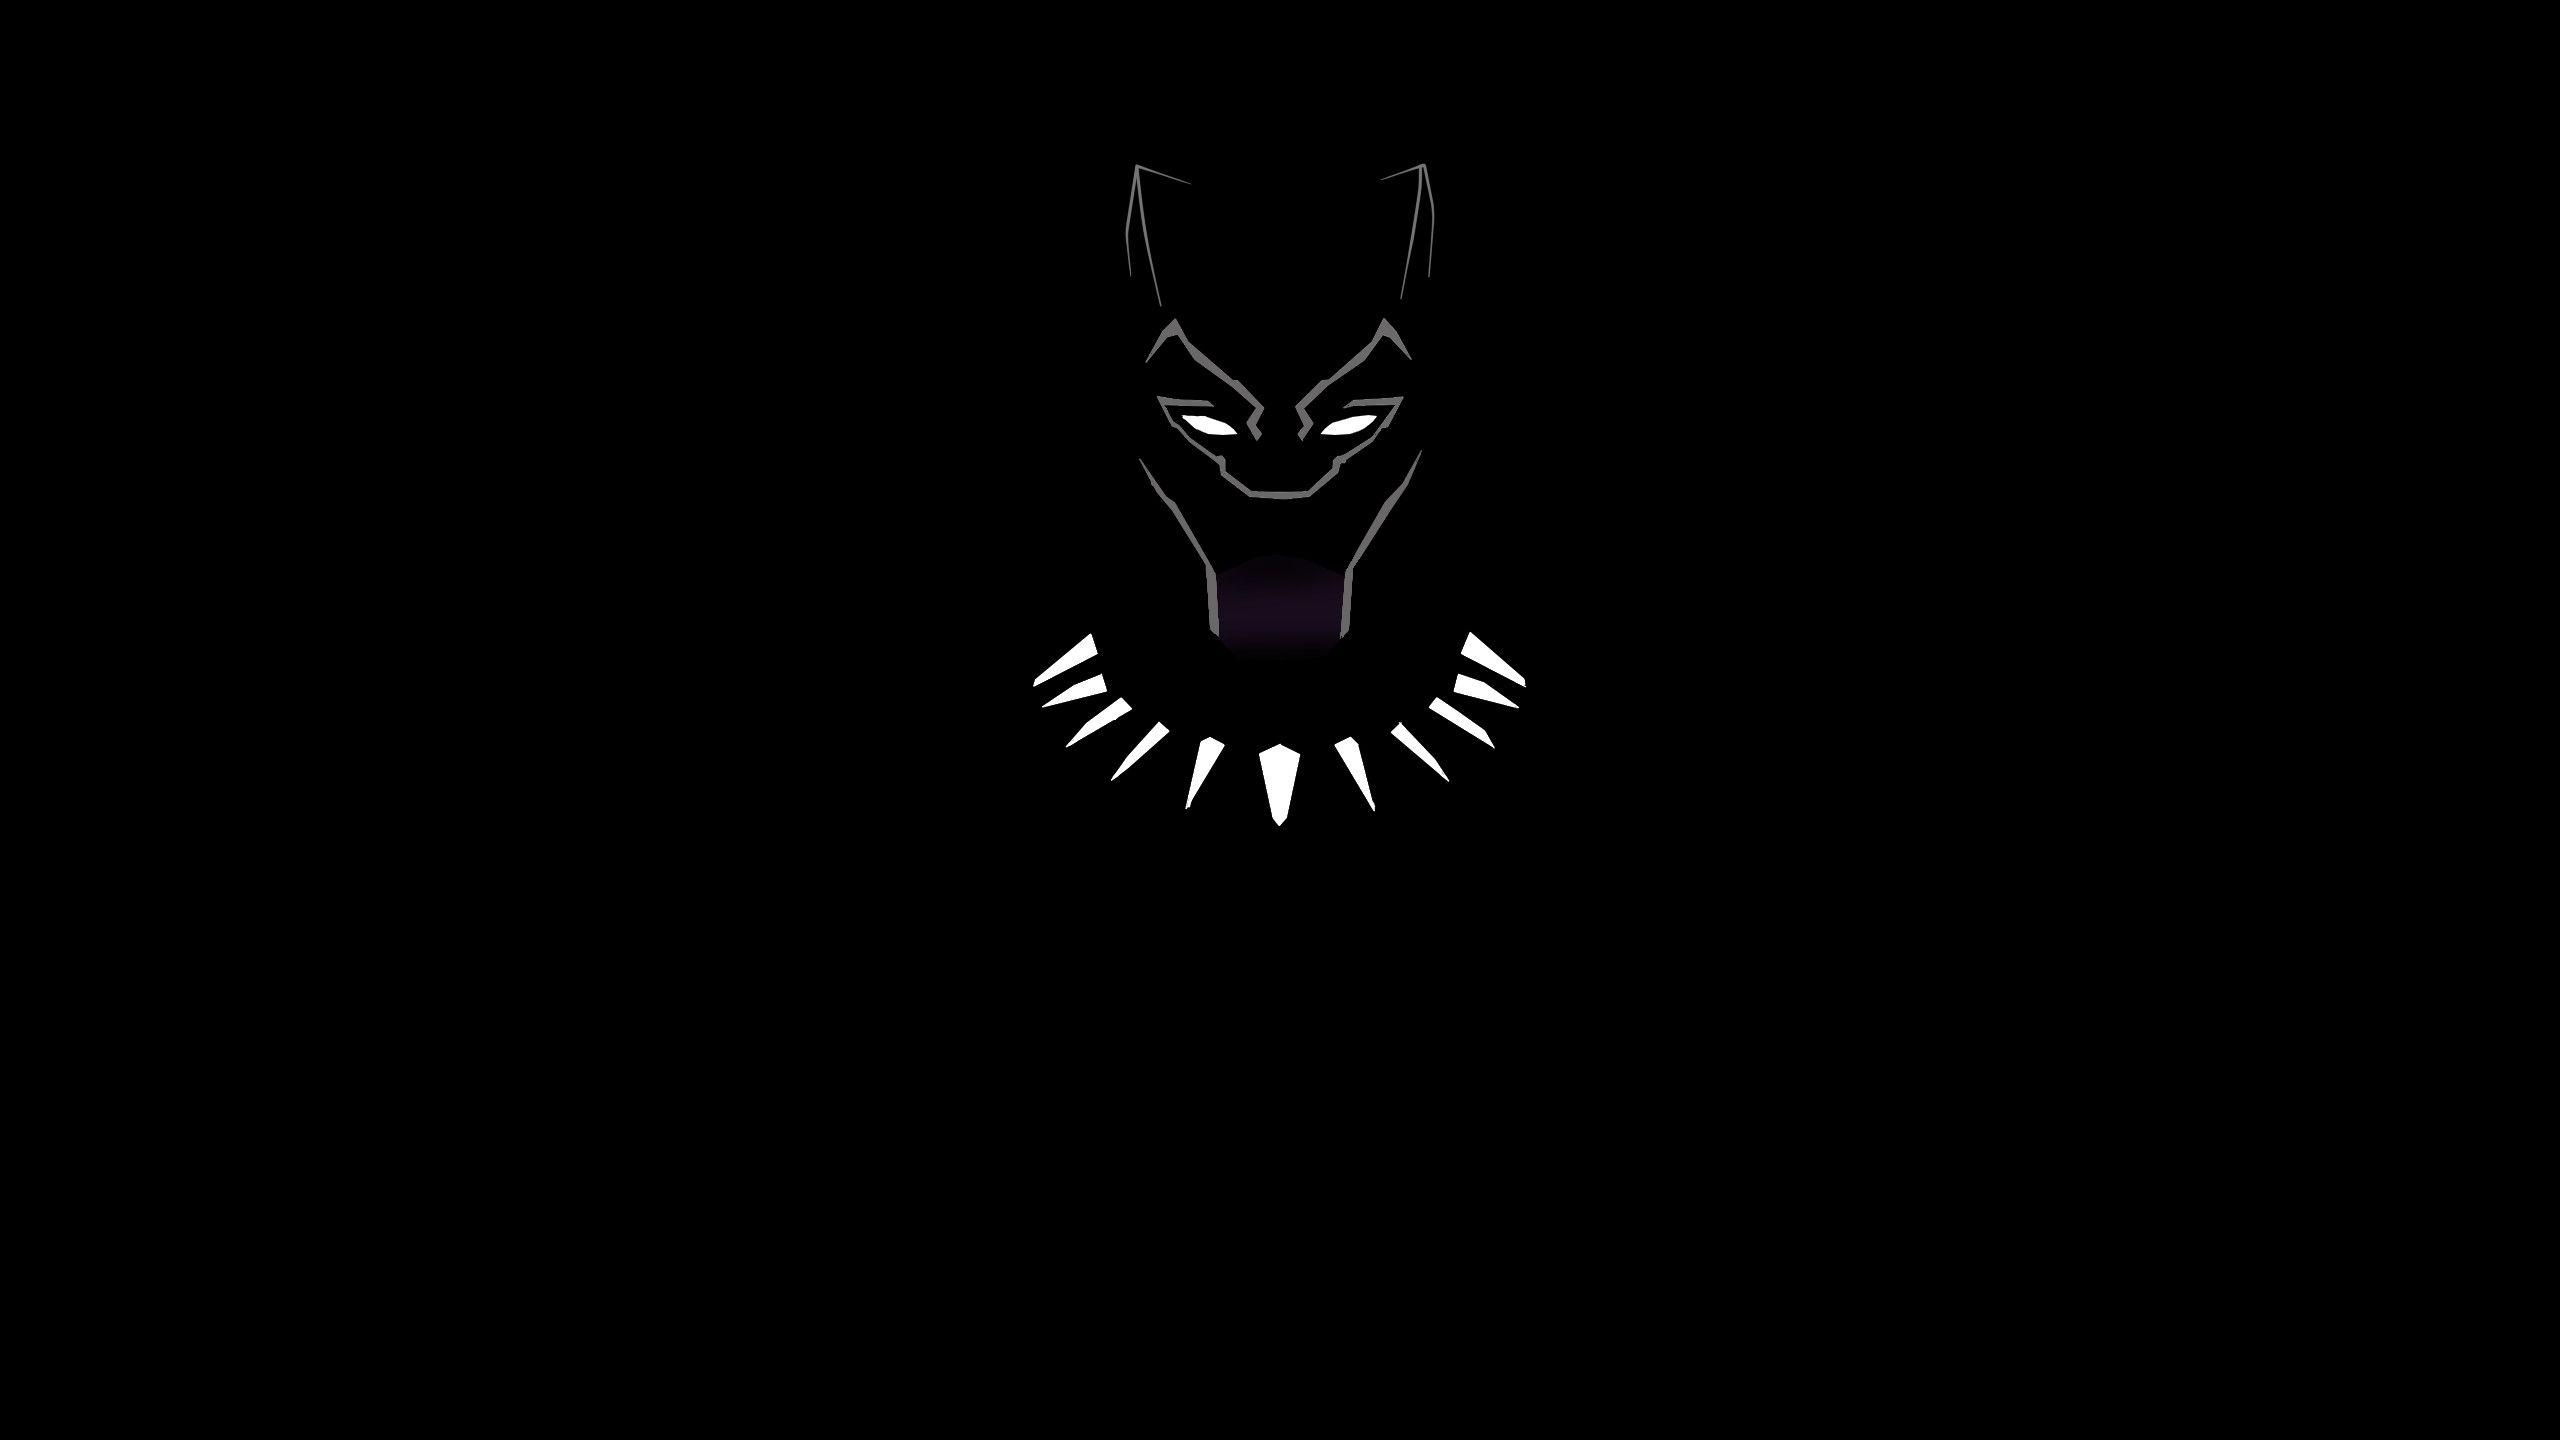 Hình nền Black Panther 4K: Thưởng thức đẹp đến ngỡ ngàng của con báo đen đầy uy lực với hình nền Black Panther 4K. Với độ phân giải cao và màu sắc sống động, không gì tuyệt vời hơn khi sử dụng hình nền này cho máy tính hay điện thoại của bạn.